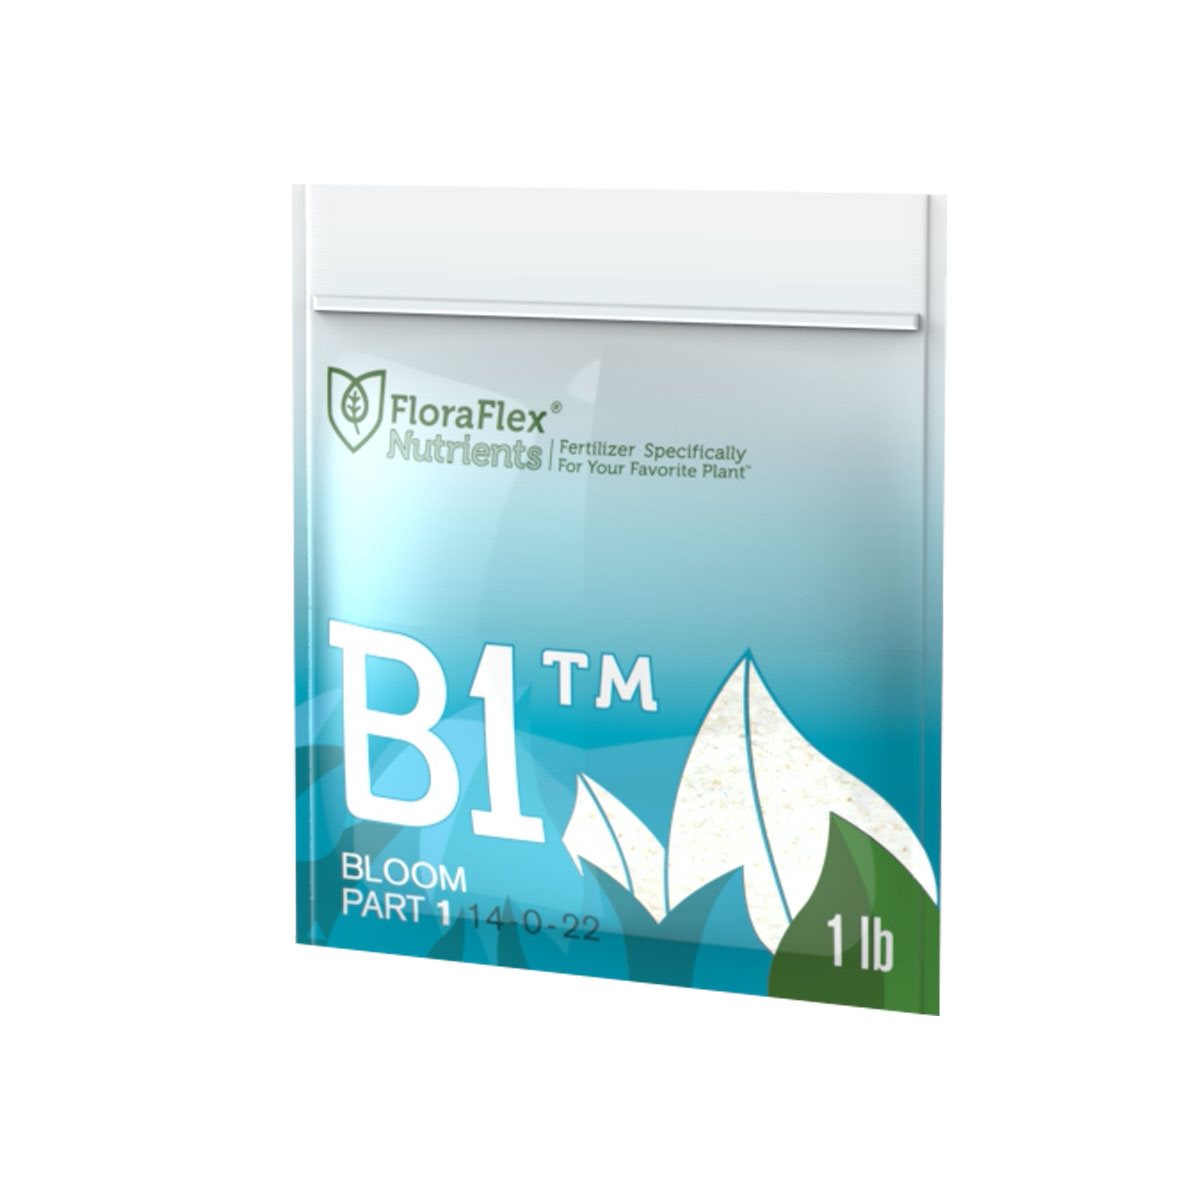 Product Image:Nutriments FloraFlex - B1